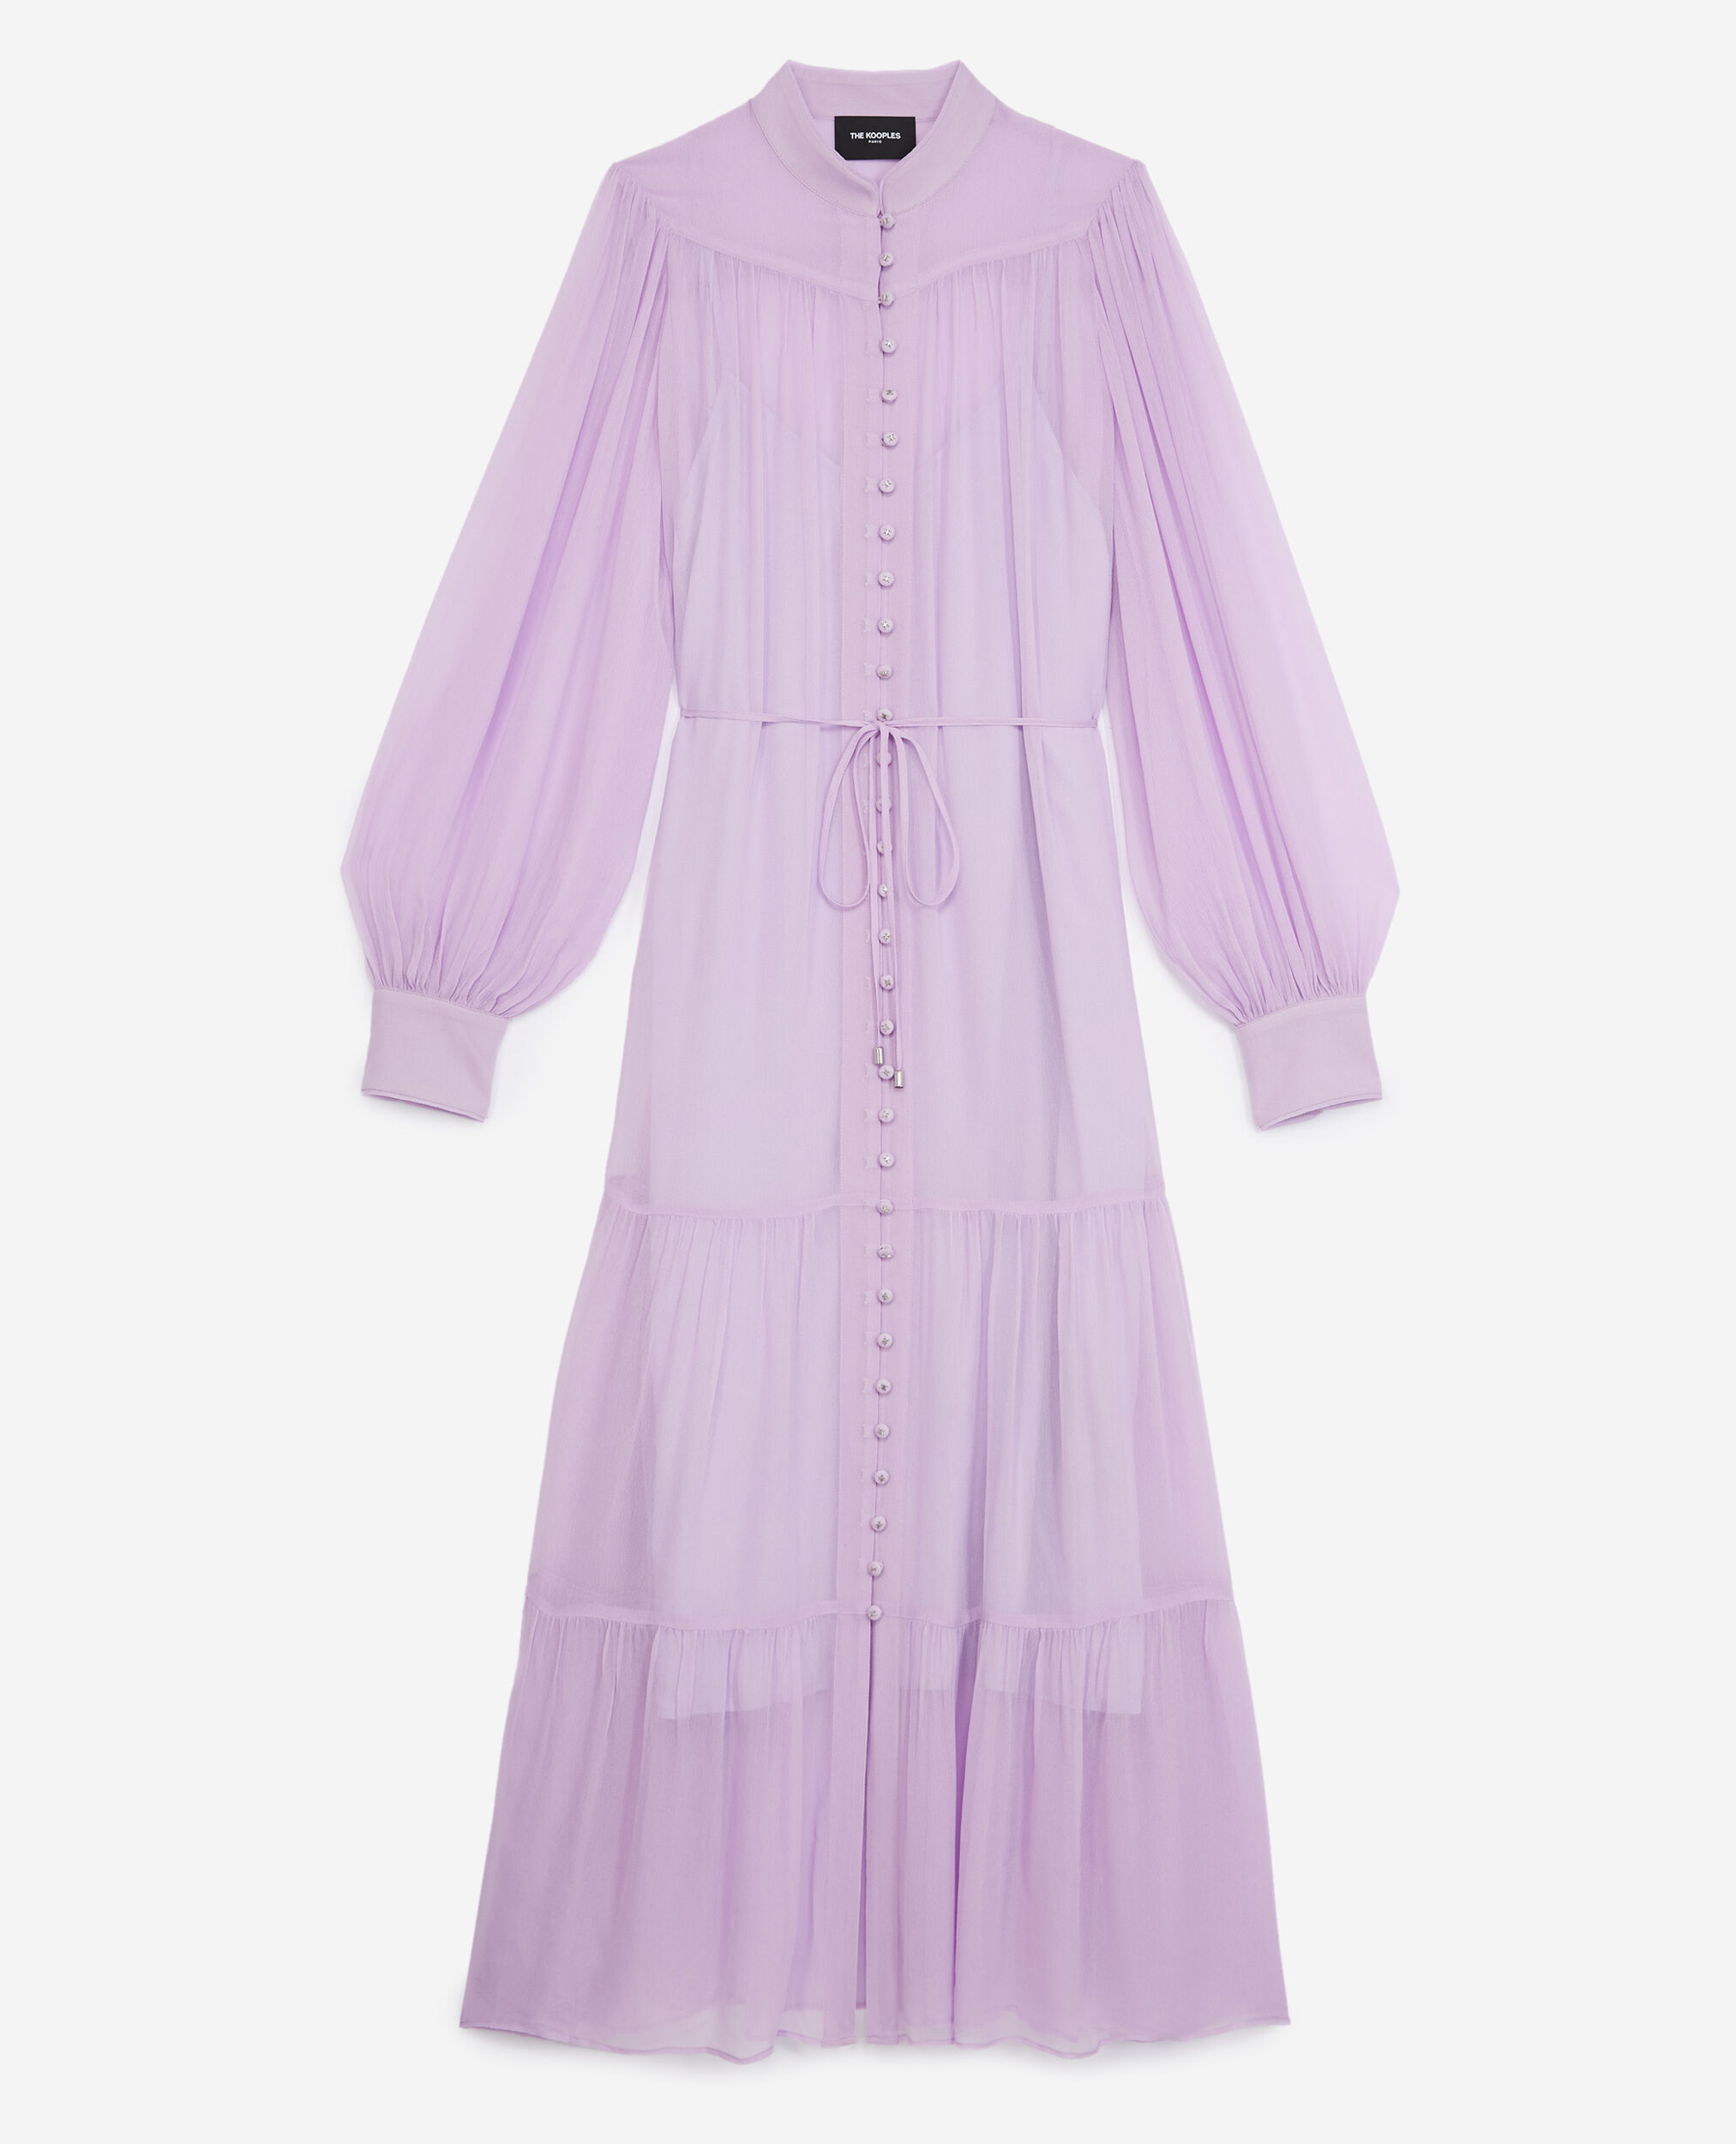 Langes Kleid violett Volants Gürtel, MAUVE, hi-res image number null